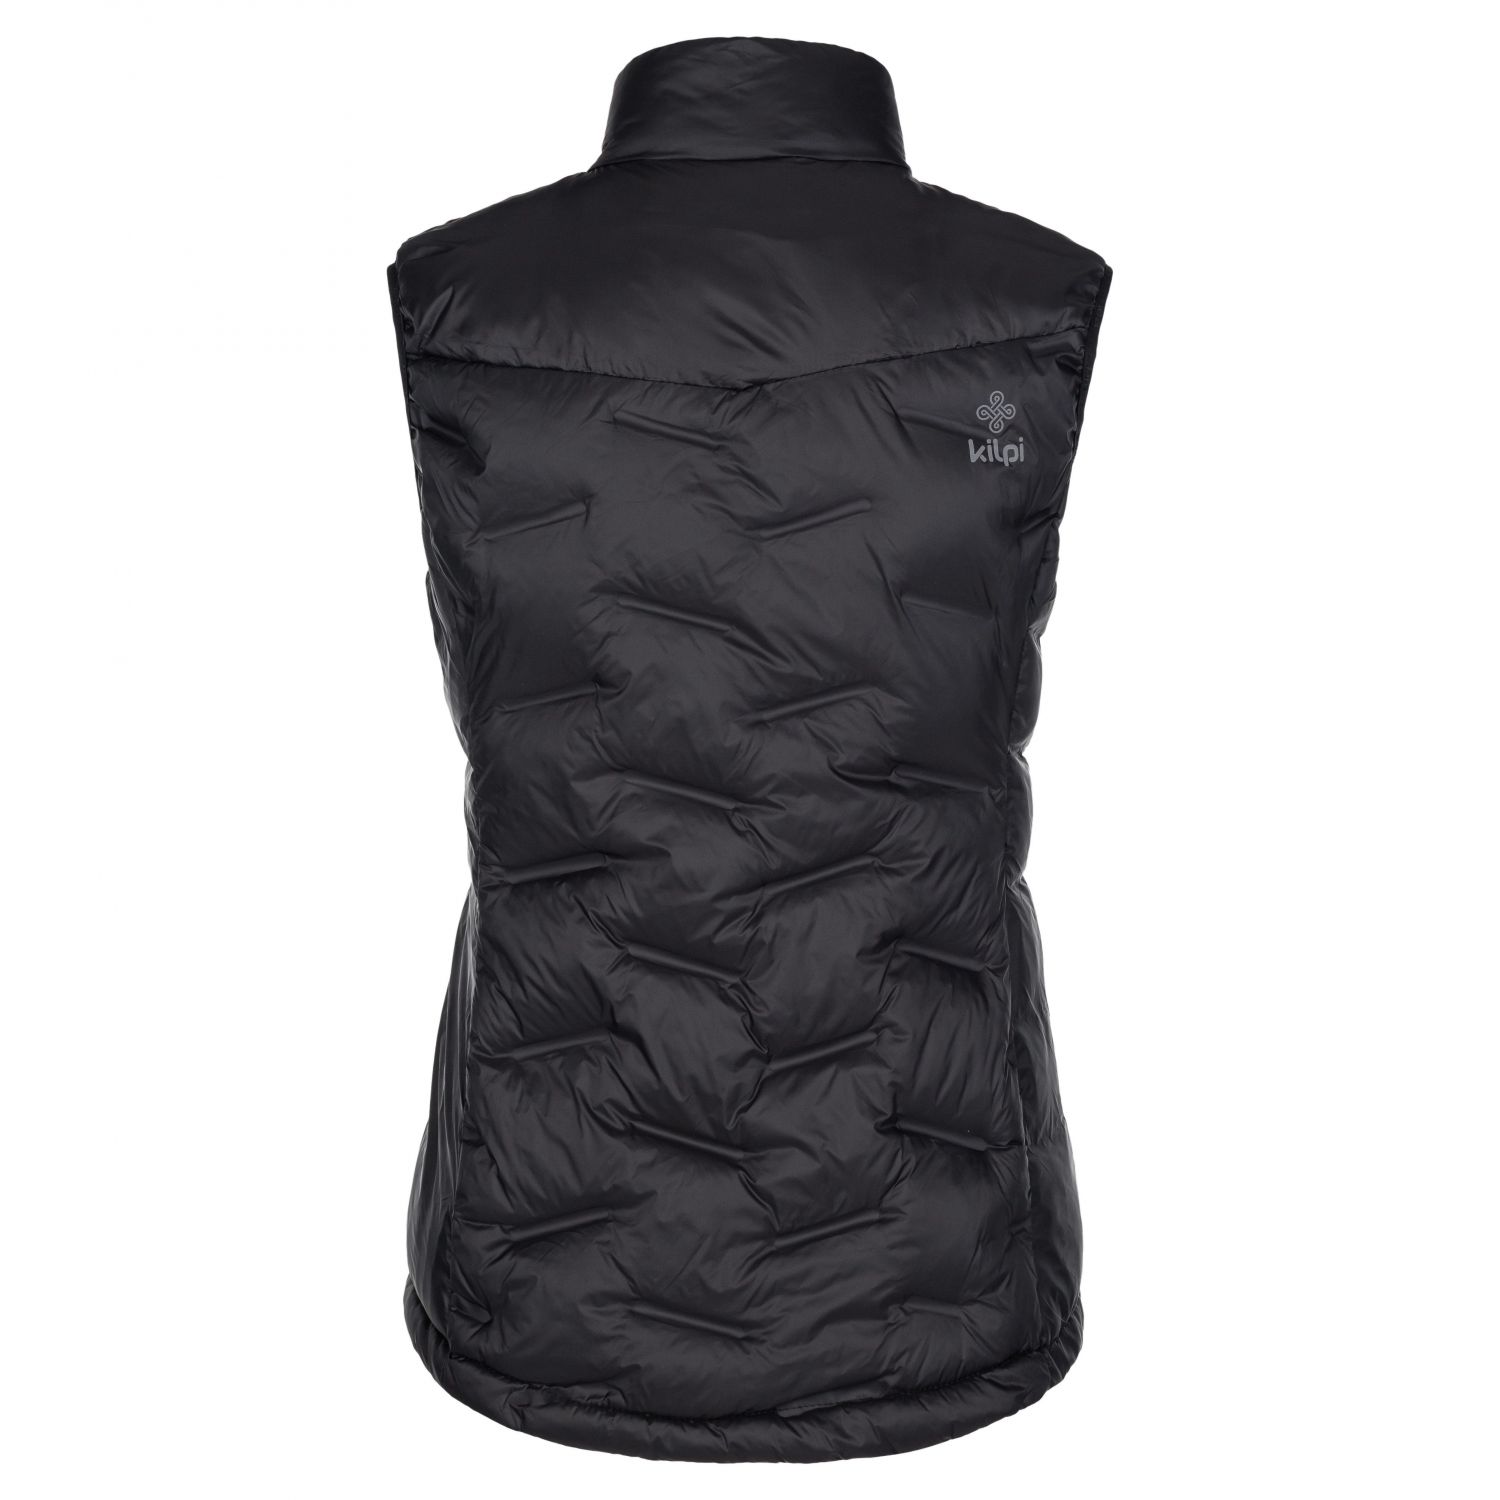 Kilpi Nai-W, insulated vest, women, black